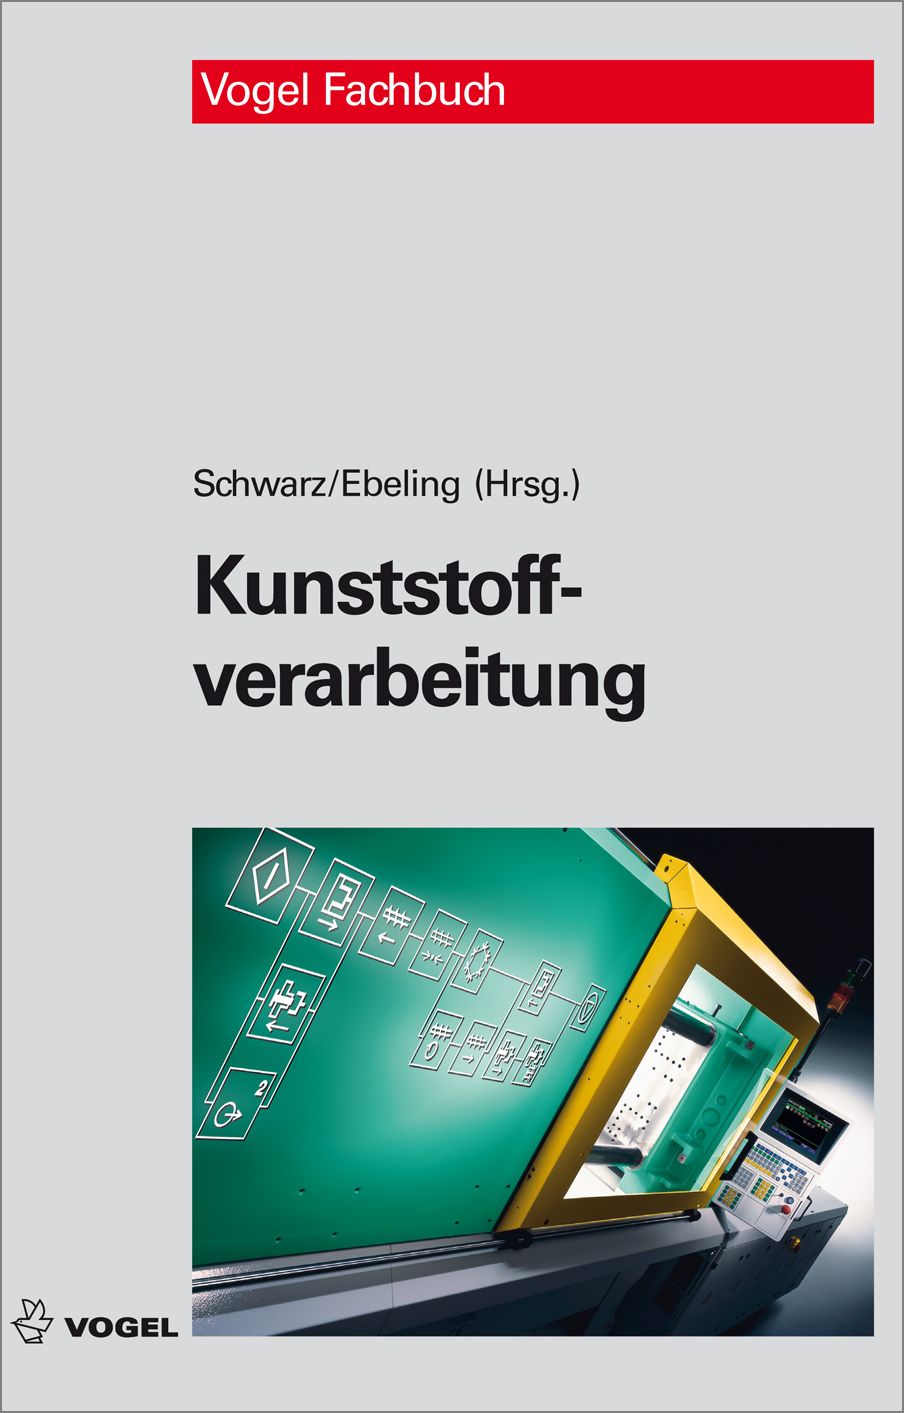 Das Fachbuch "Kunstsoffverarbeitung" von Schwarz/Ebeling